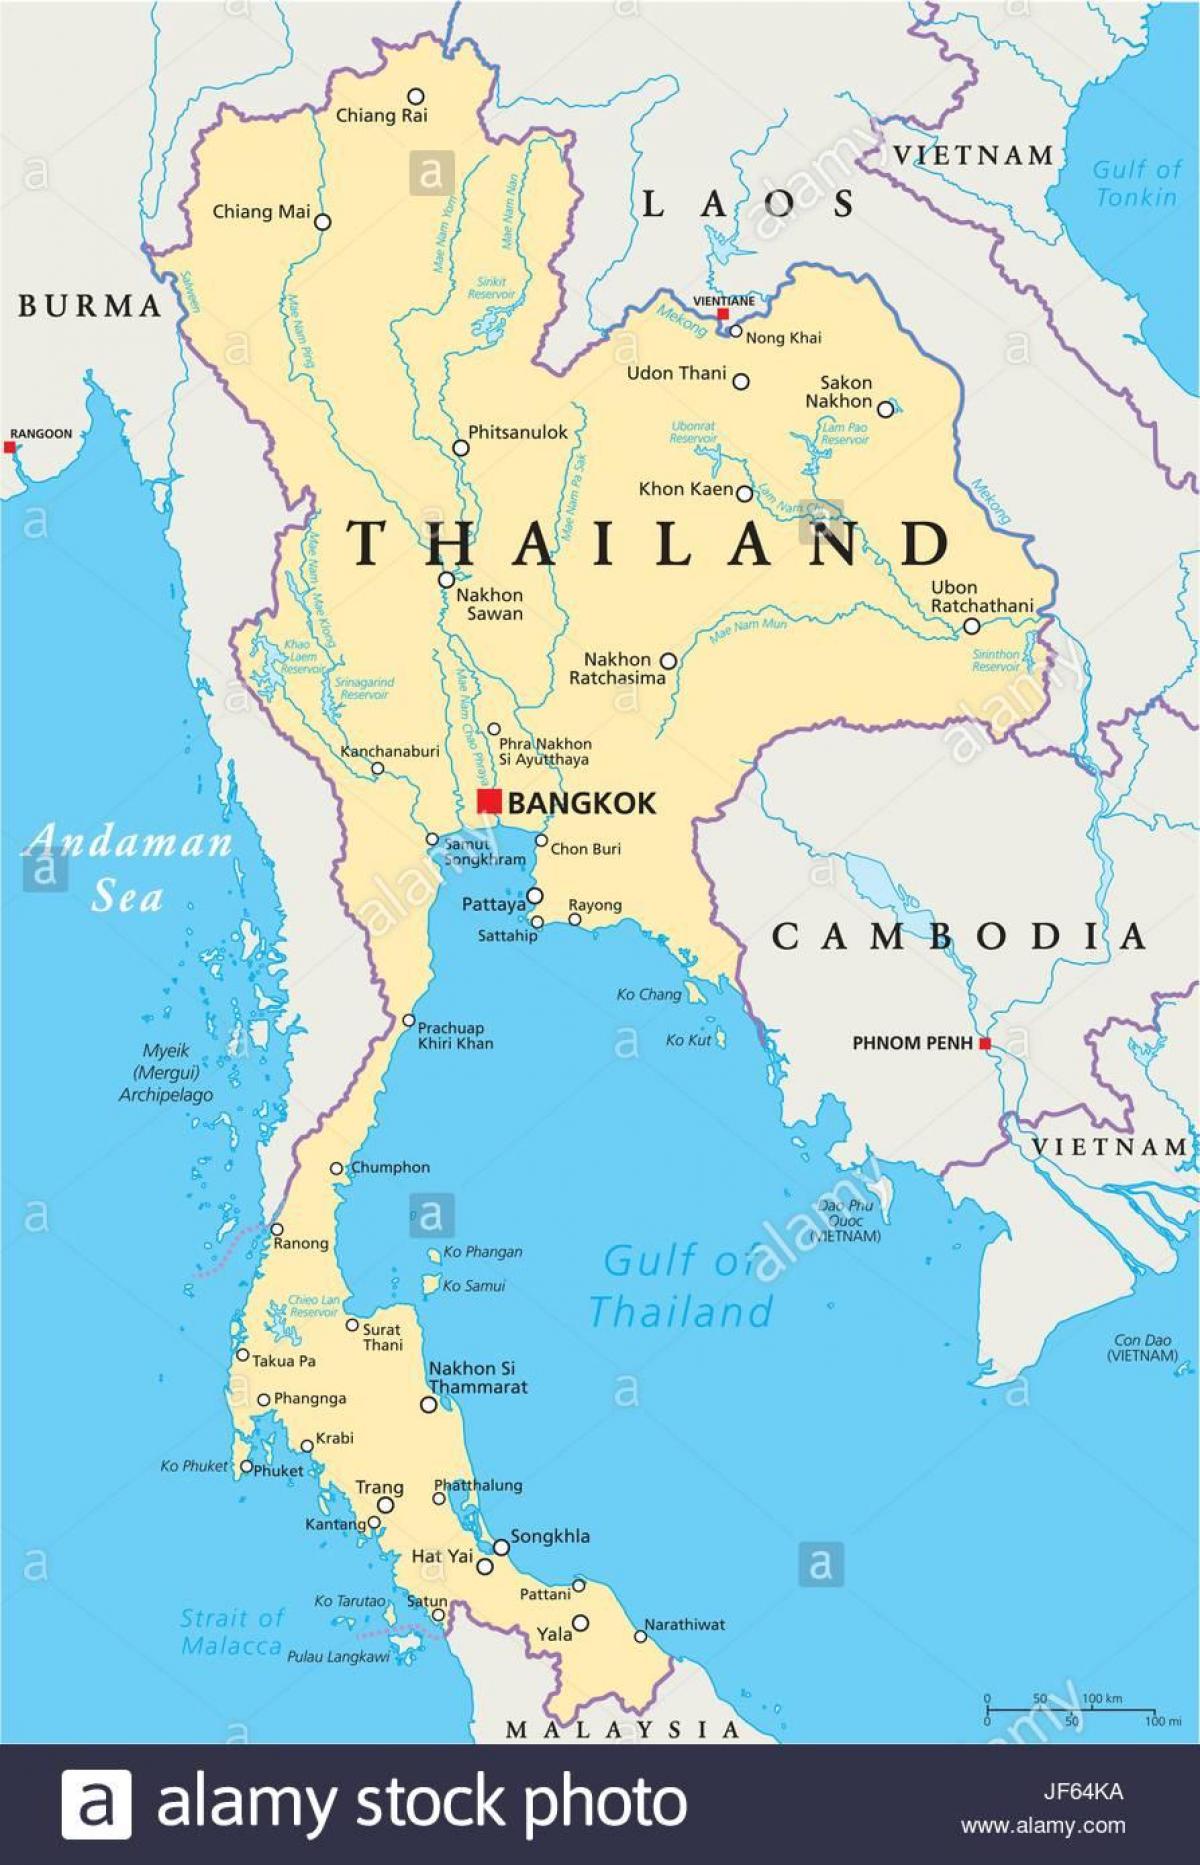 μπανγκόκ ταϊλάνδη παγκόσμιο χάρτη